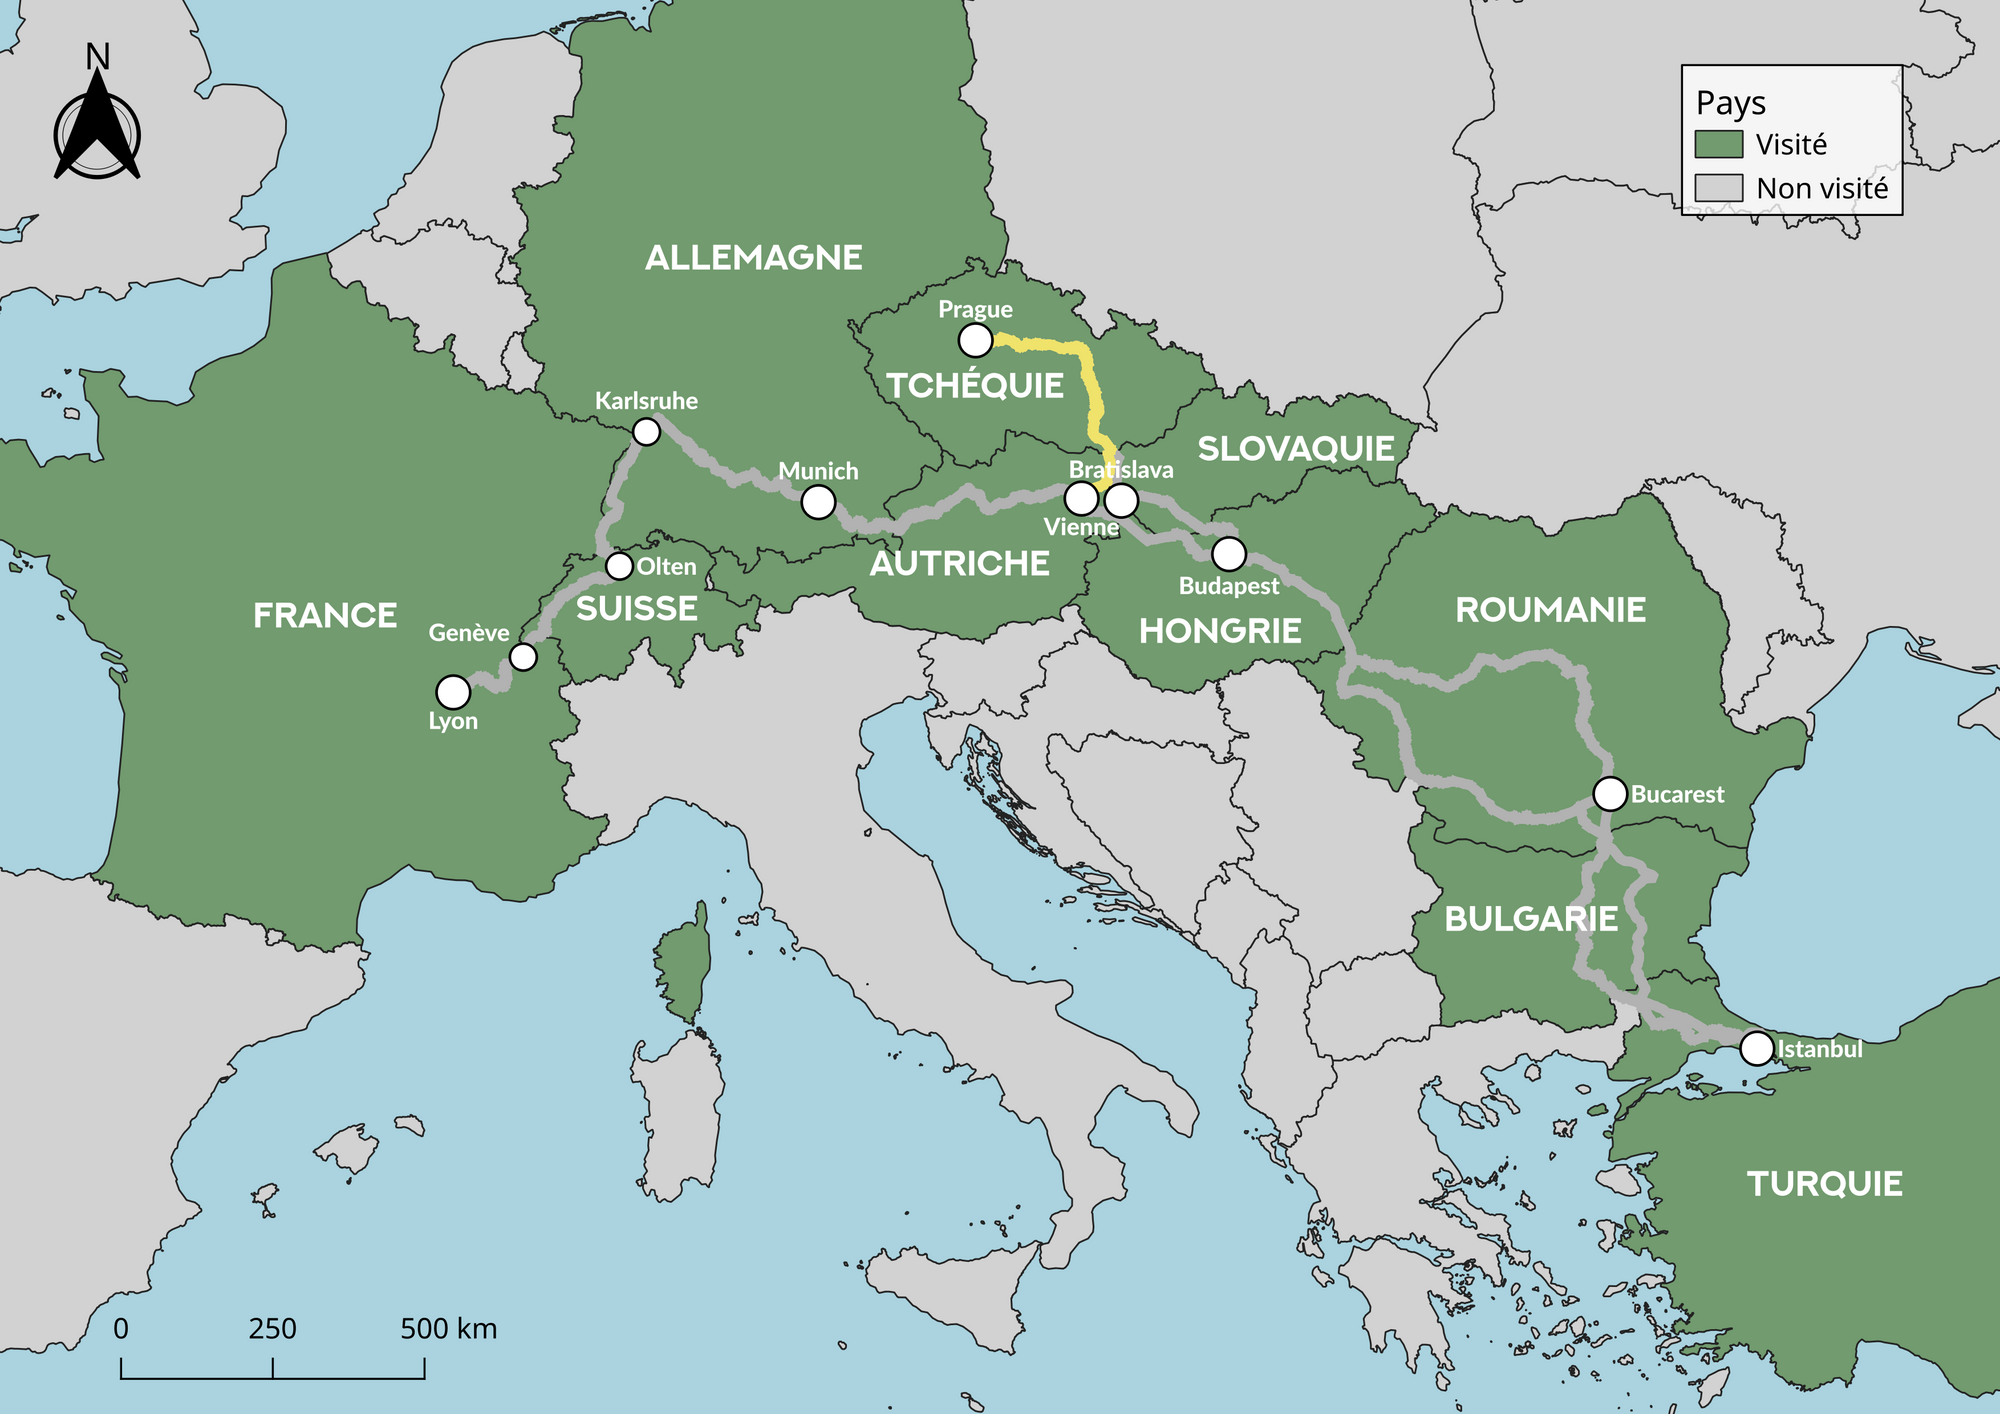 Carte de l'Europe indiquant le trajet en train : Prague - Vienne